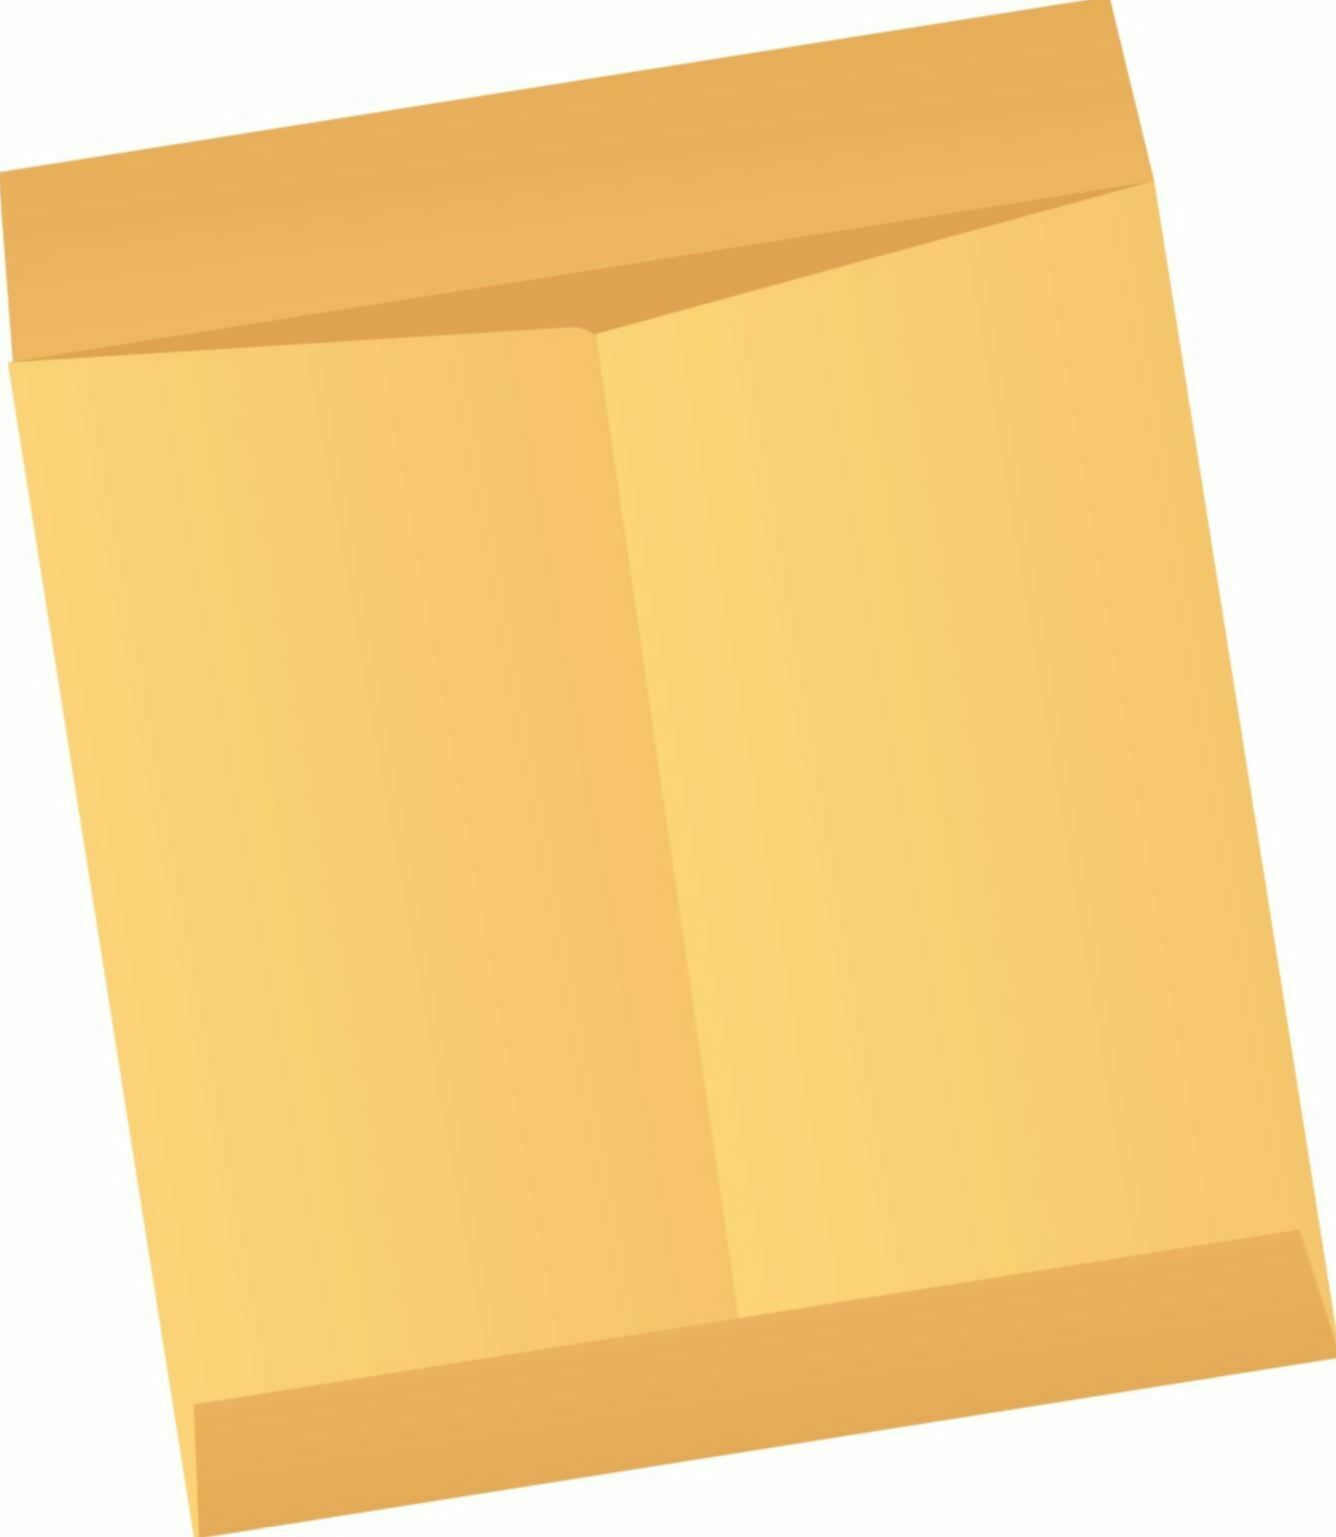 Brown Kraft Envelopes Jumbo Sizes 250/ctn Large Flat Item Organizer Storage